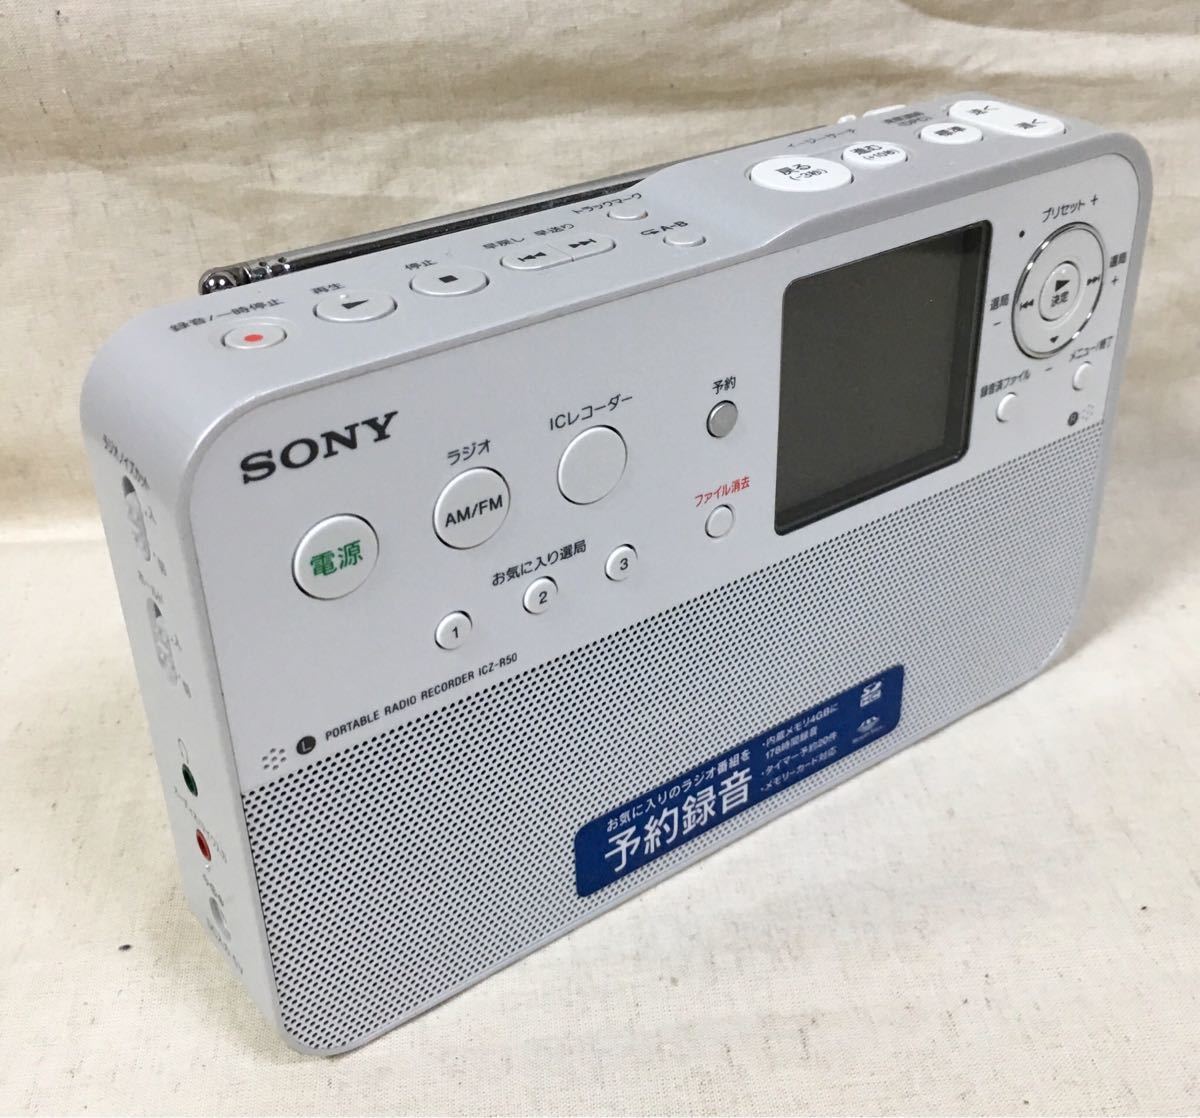 “索尼”便攜式收音機【ICZ-R50】是中世紀時期。 原文:《ソニー》ポータブル ラジオ レコーダー 【ICZ- R50】中古です。